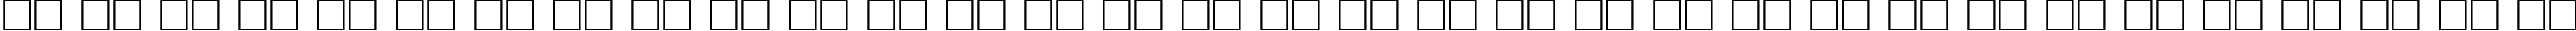 Пример написания русского алфавита шрифтом FreeSet110b